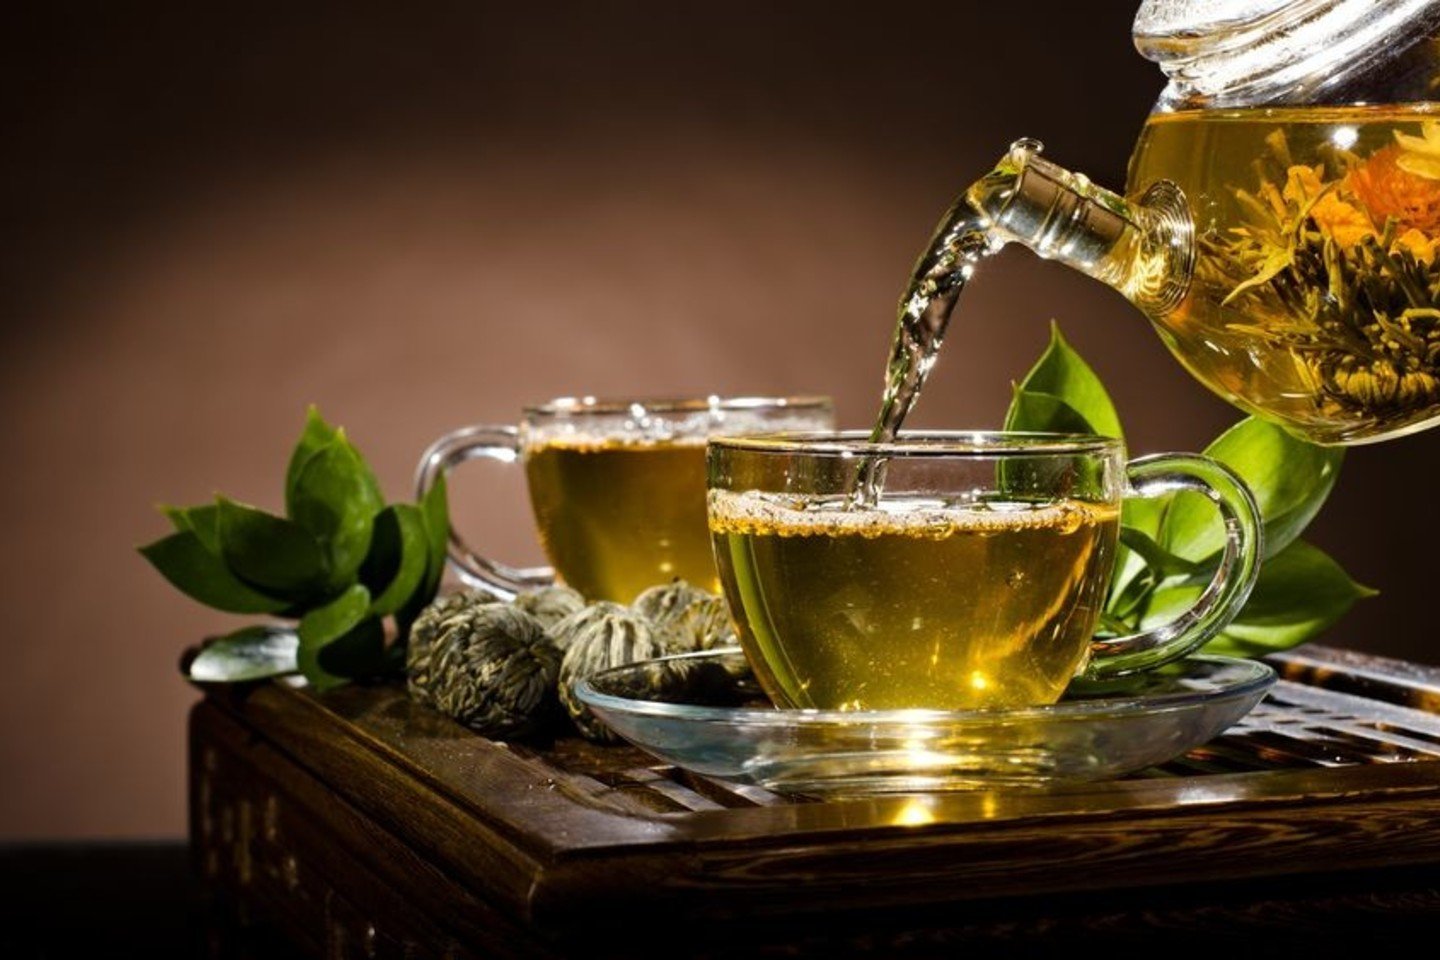  Žaliojoje arbatoje yra net 1–4 proc. kofeino, daugiau nei kavoje.<br> 123rf.com nuotr.